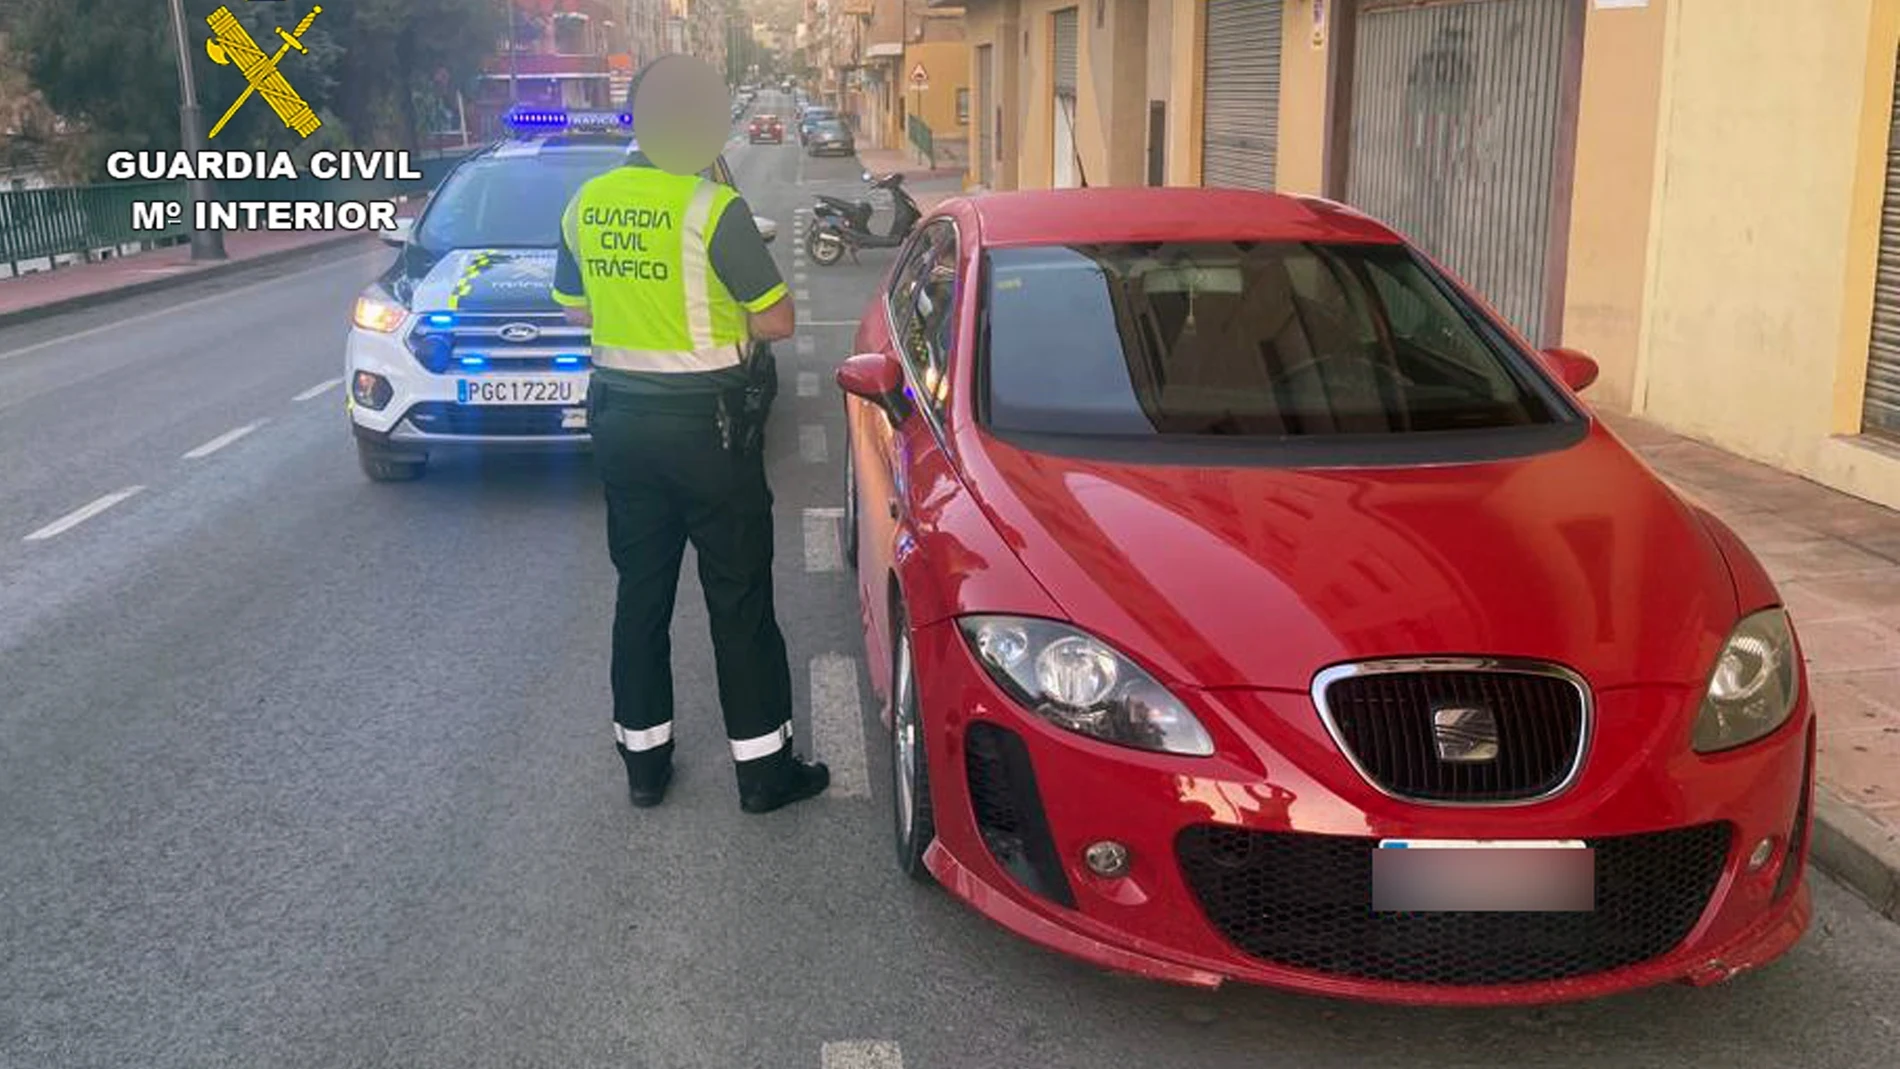 El vehículo fue detenido en el casco urbano de Cieza y el conductor es investigado como presunto autor de delito contra la seguridad vial